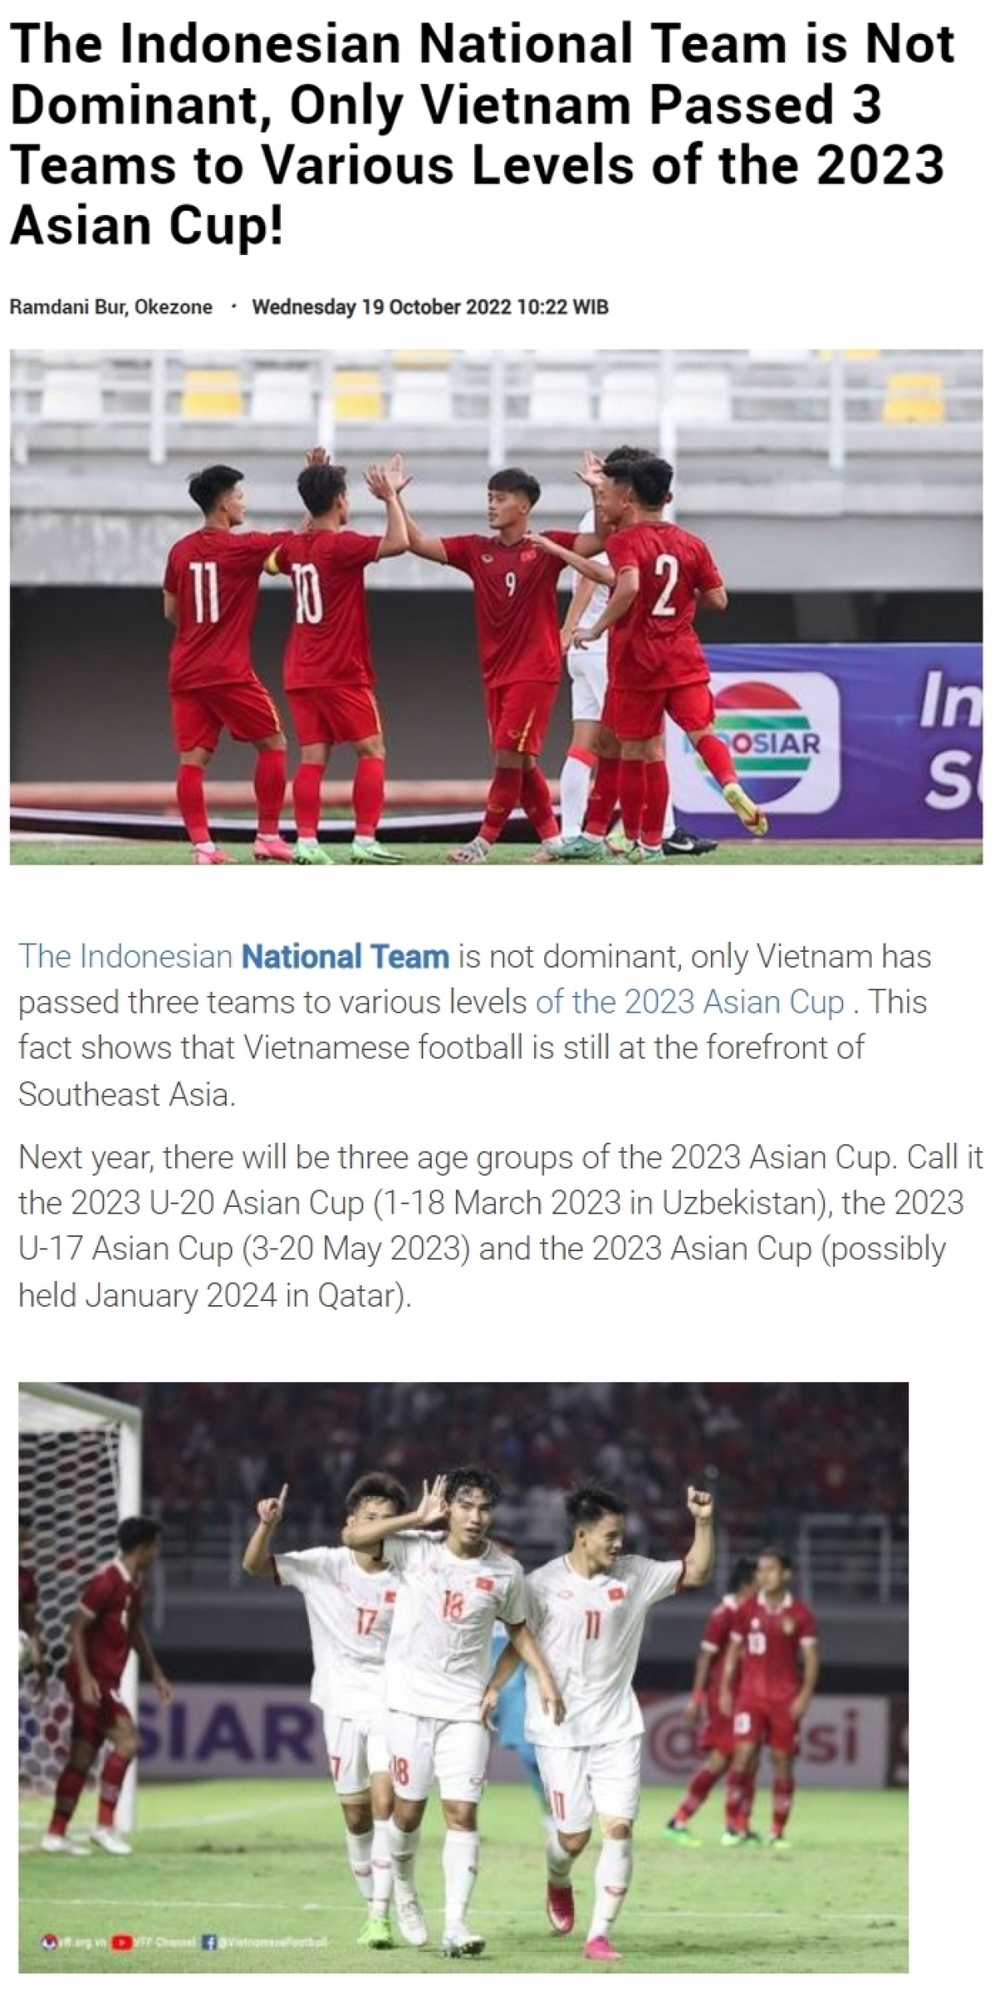 “Căn cứ địa” giúp bóng đá Việt Nam đạt thành tích khiến báo Indonesia thán phục - Ảnh 1.